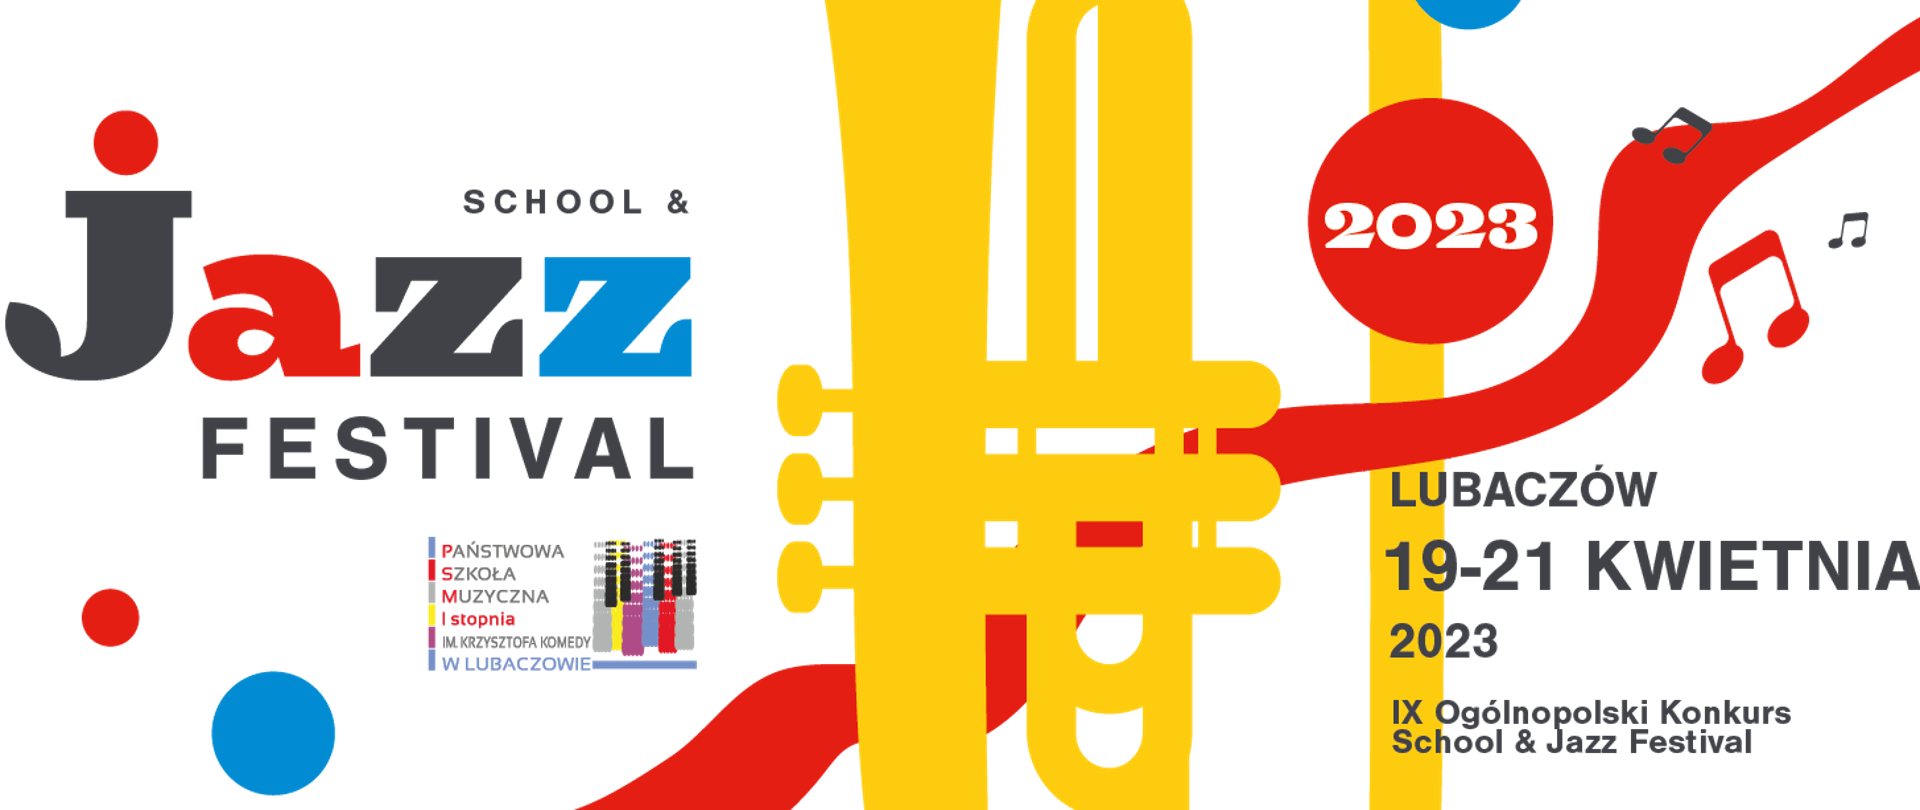 Baner reklamowy SchoolJazz 2022 na białym tle z ikonografią trąbki w kolorze żółtym na środku o kolorowymi nutkami i okręgami, logo szkoły i tekstem "School & Jazz Festival 2023 po lewej stronie, a po prawej Lubaczów 19-21 kwietnia 2023 Lubaczów IX Ogólnopolski Konkurs School & Jazz Festival"